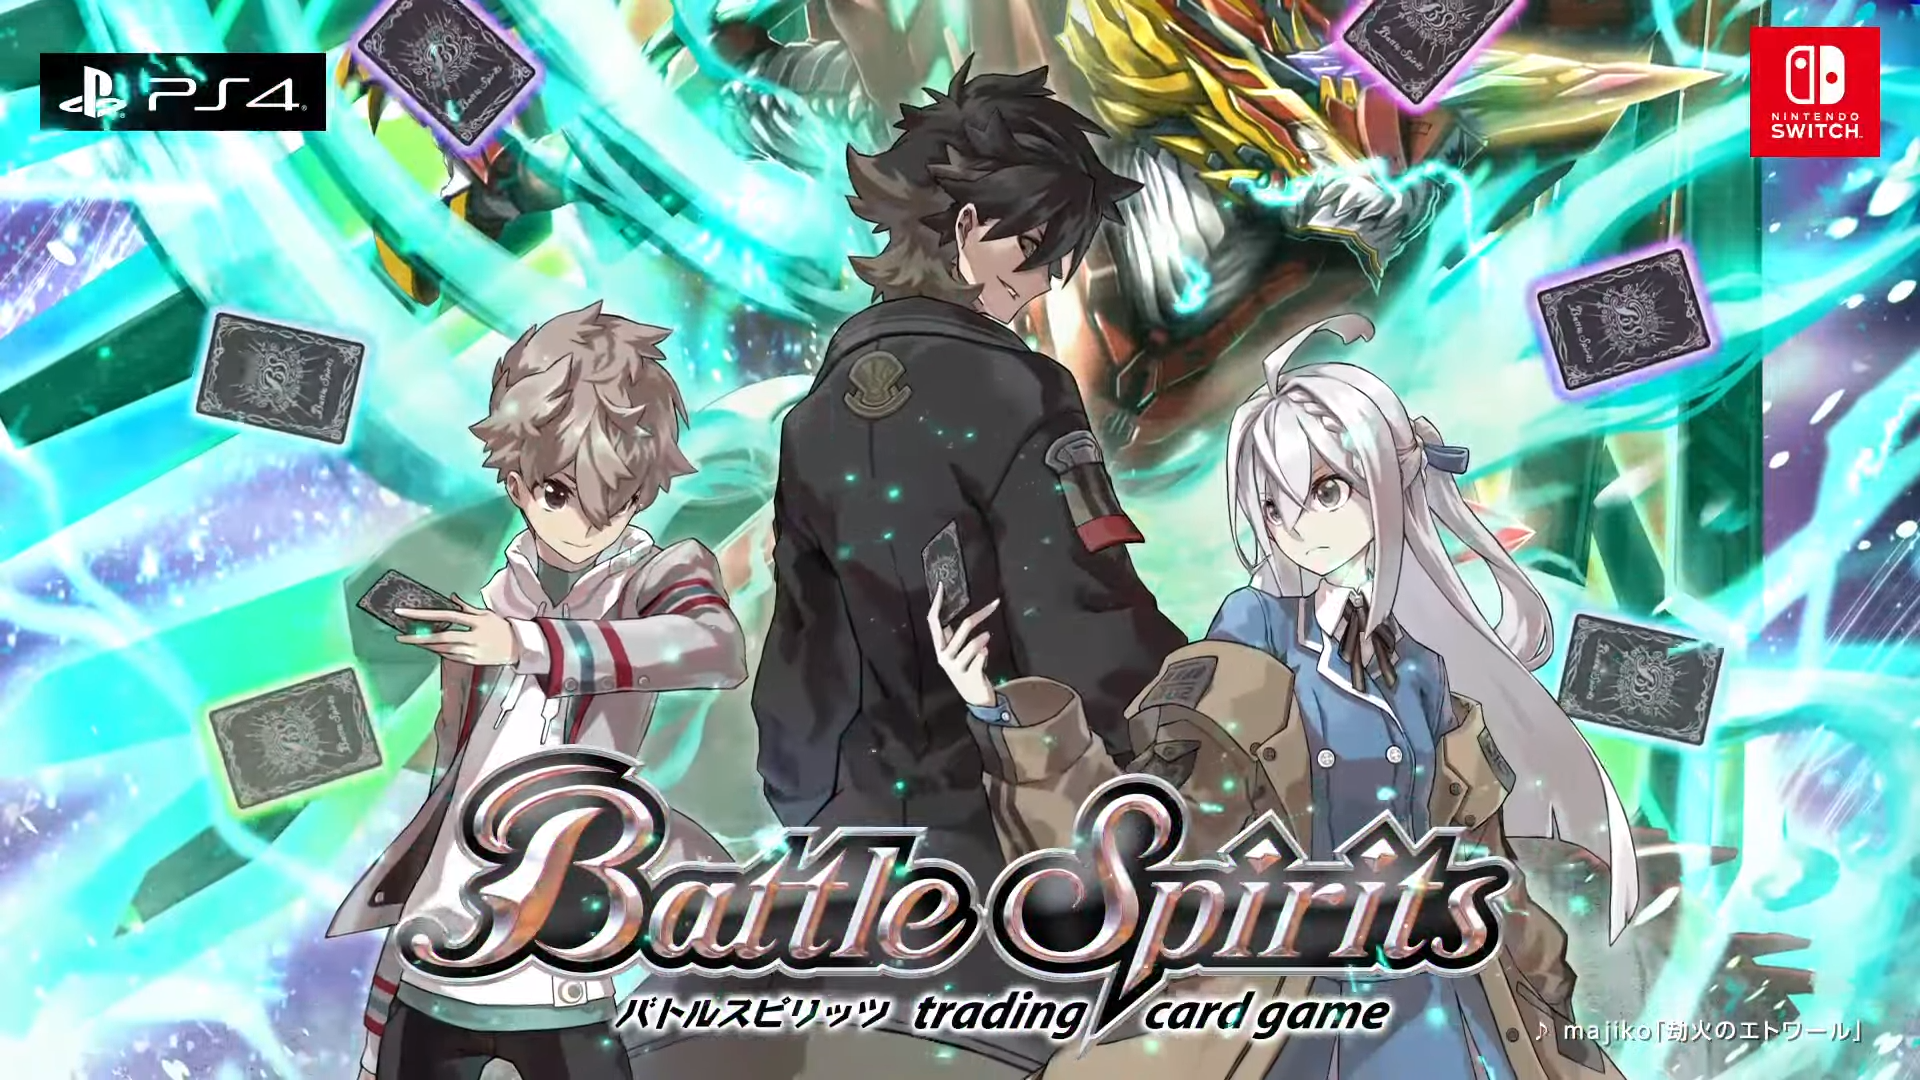 Sukunai Magic Battle. Game Battle Spirits download. Battle spirits